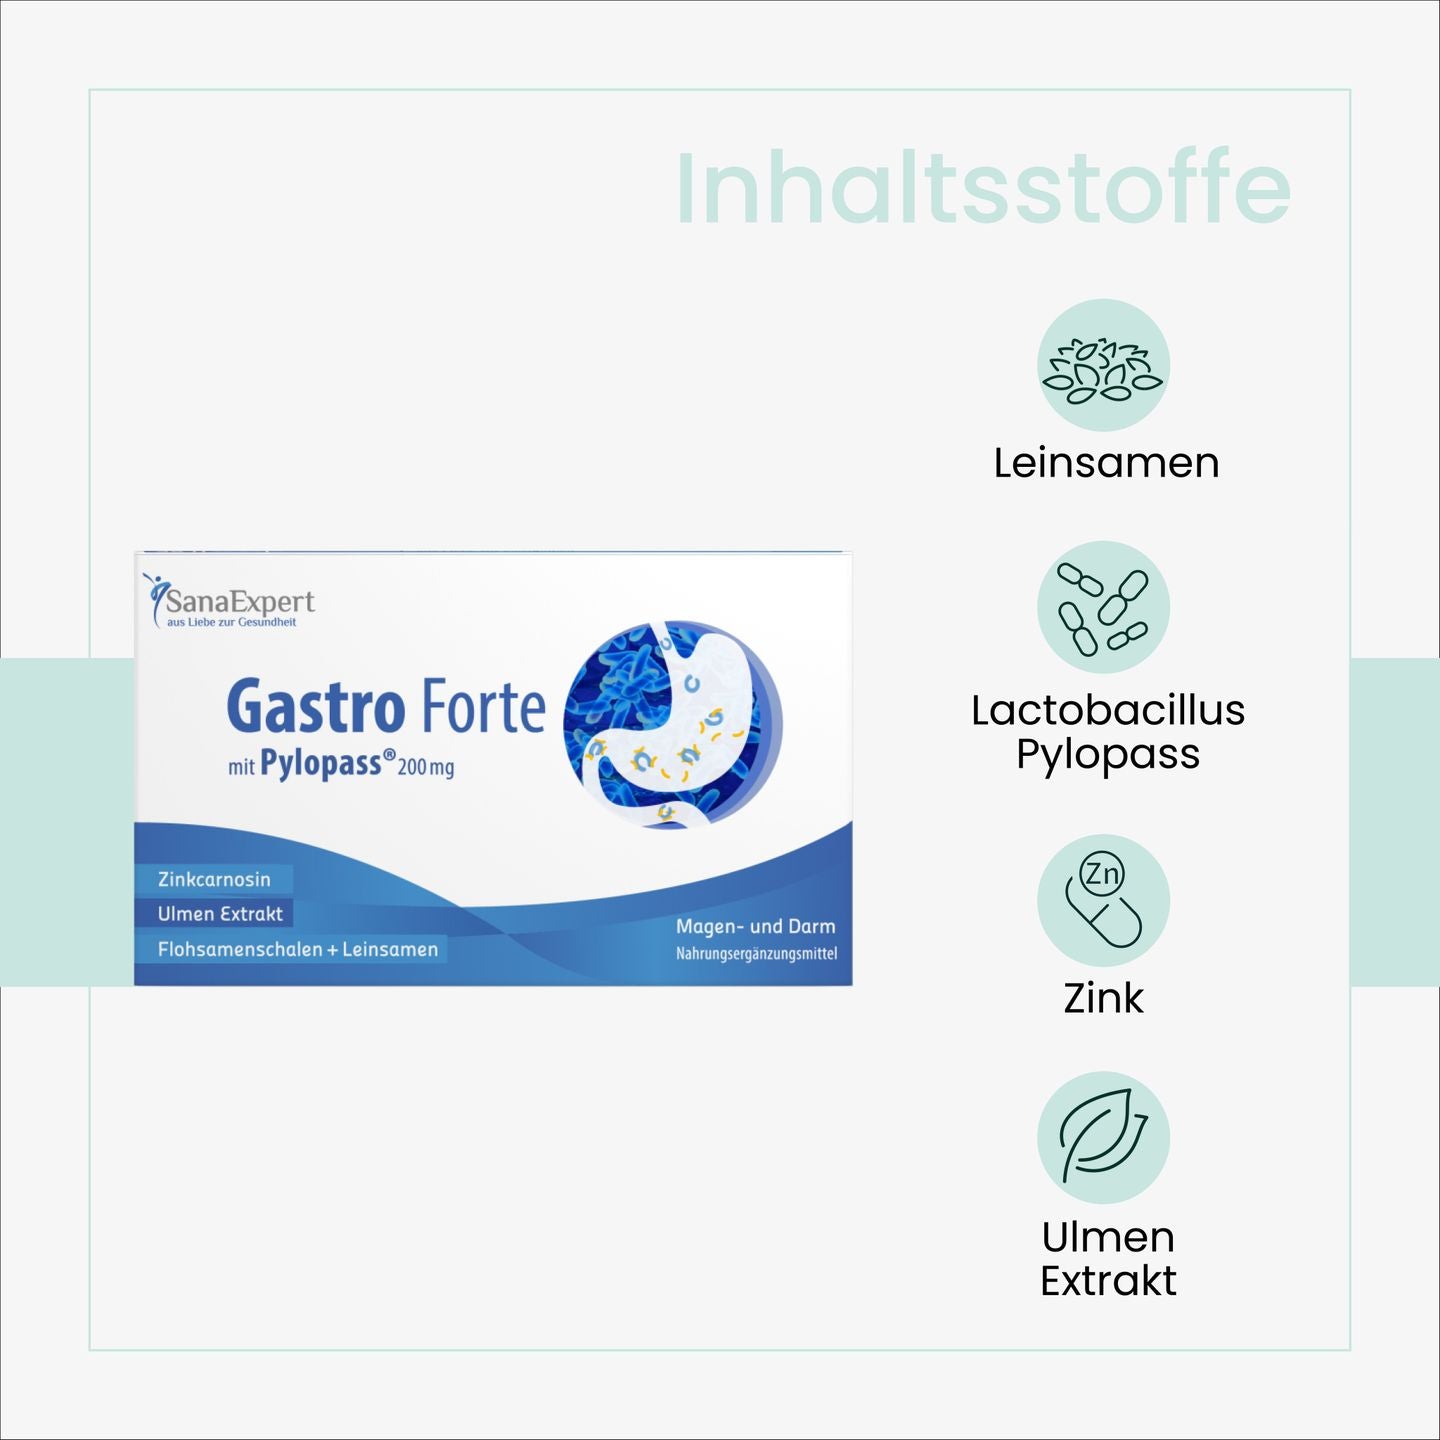 Packung von SanaExpert Gastro Forte mit Auflistung der Inhaltsstoffe wie Leinsamen, Lactobacillus Pylori, Zink und Ulmenextrakt.